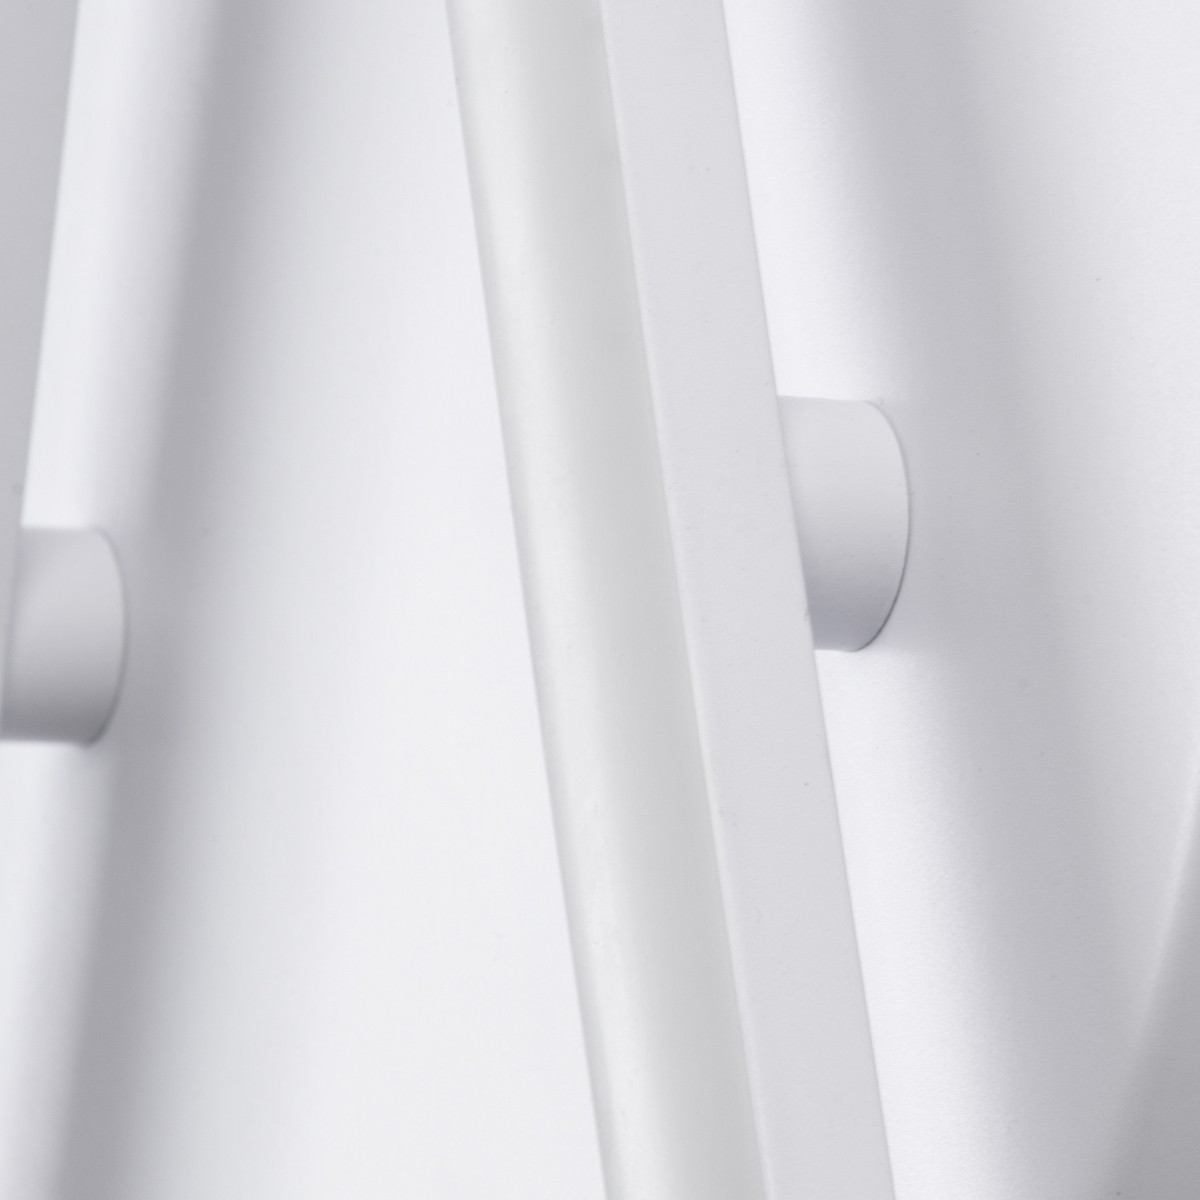 LED Φωτιστικό Οροφής Λευκό Γραμμικό Linear Design DRACO 36W με Εναλλαγή Φωτισμού Dimmable Φ560 x Υ6cm 61092